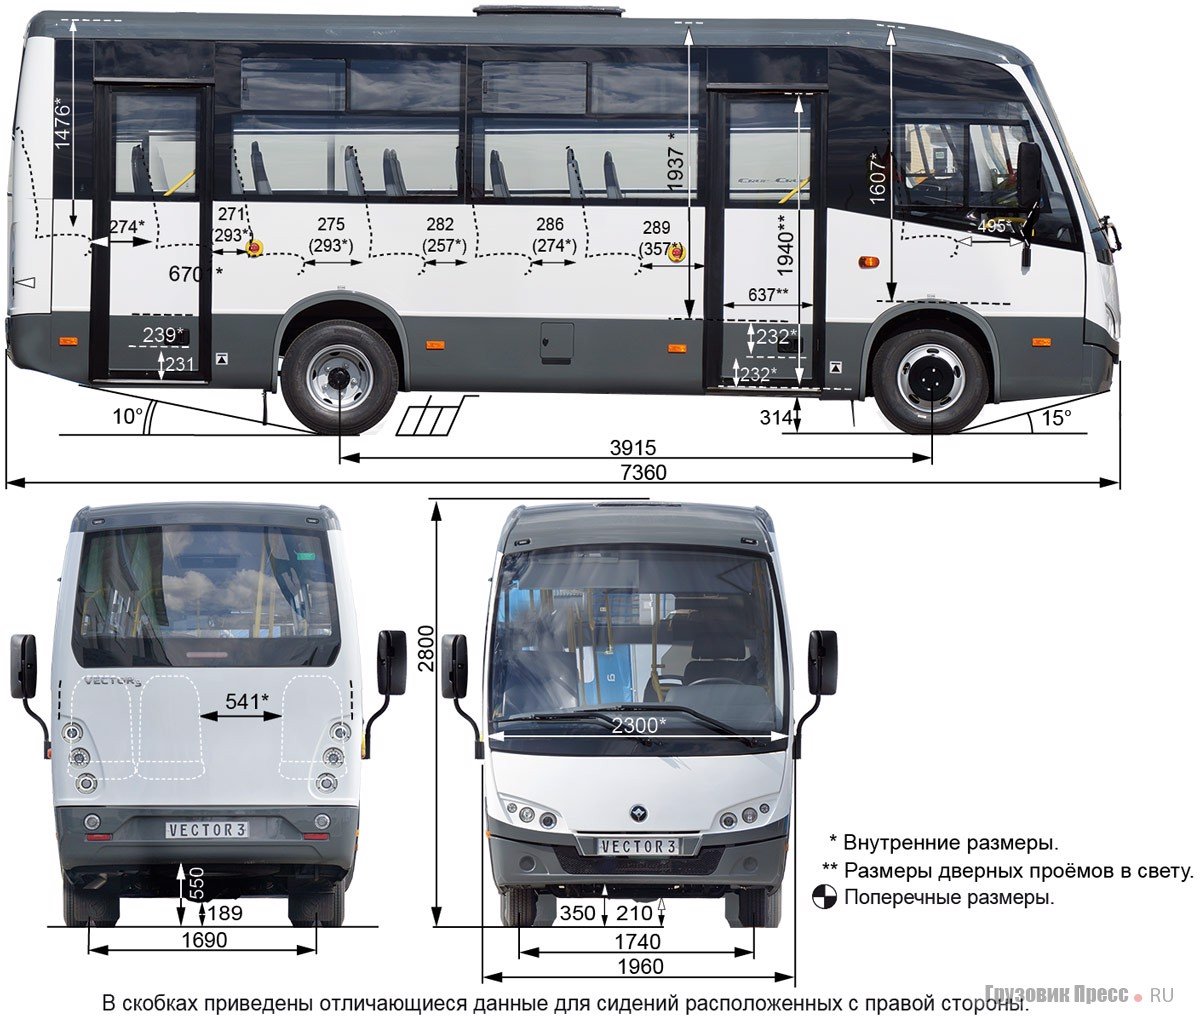 Размеры автобуса паз. ПАЗ 3204 вектор Некст. ПАЗ 320405-04 габариты. ПАЗ vector next 320405-04 характеристики. ПАЗ 3204 габариты салона.